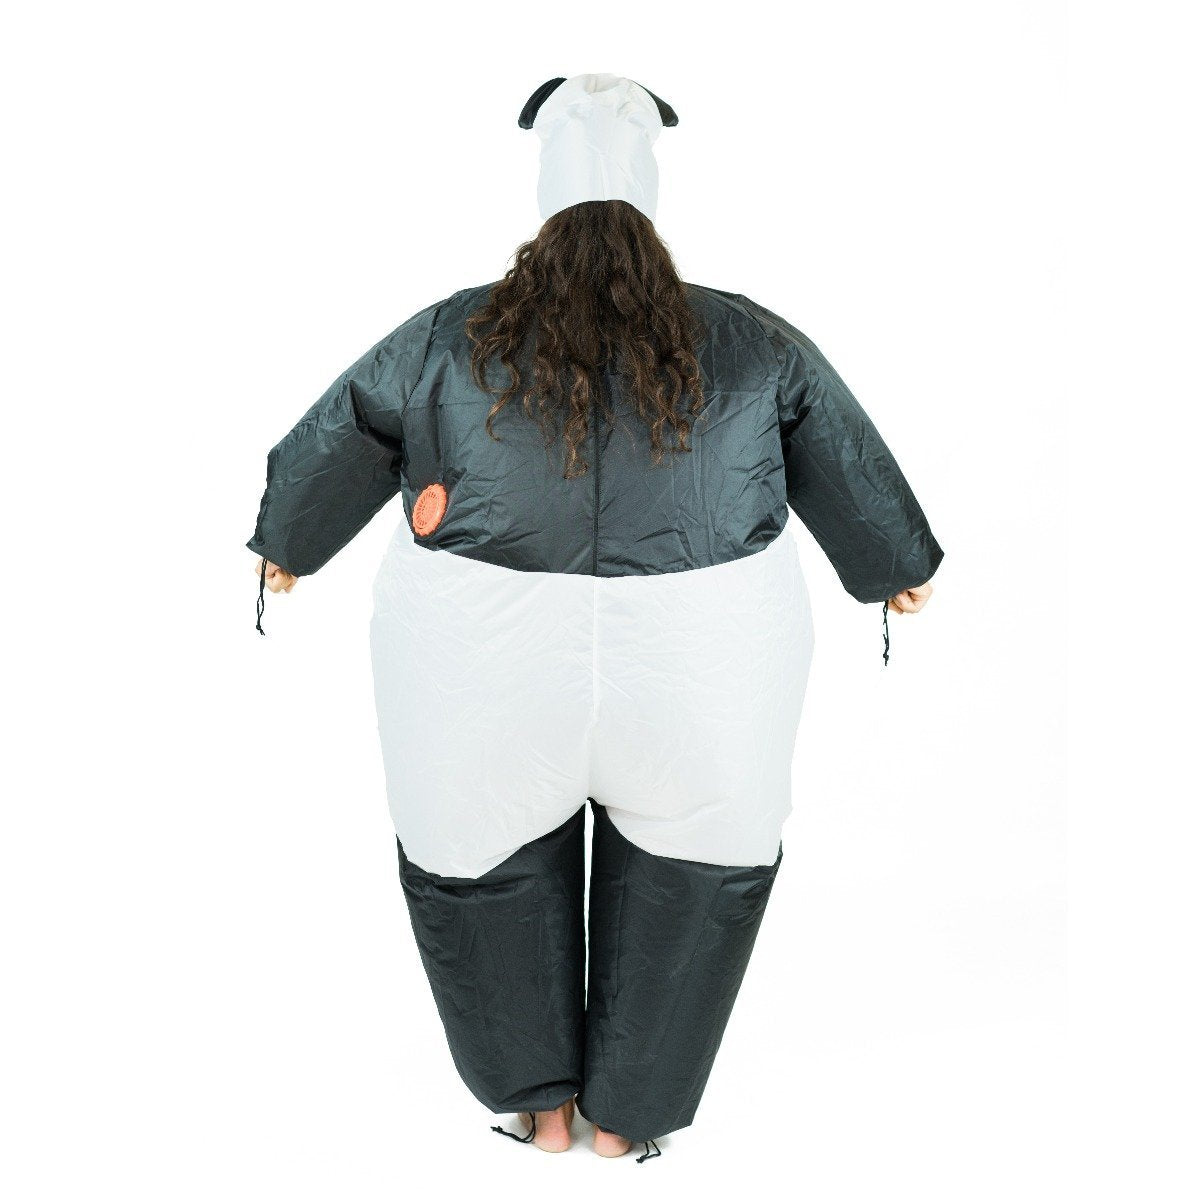 Bodysocks - Inflatable Panda Costume